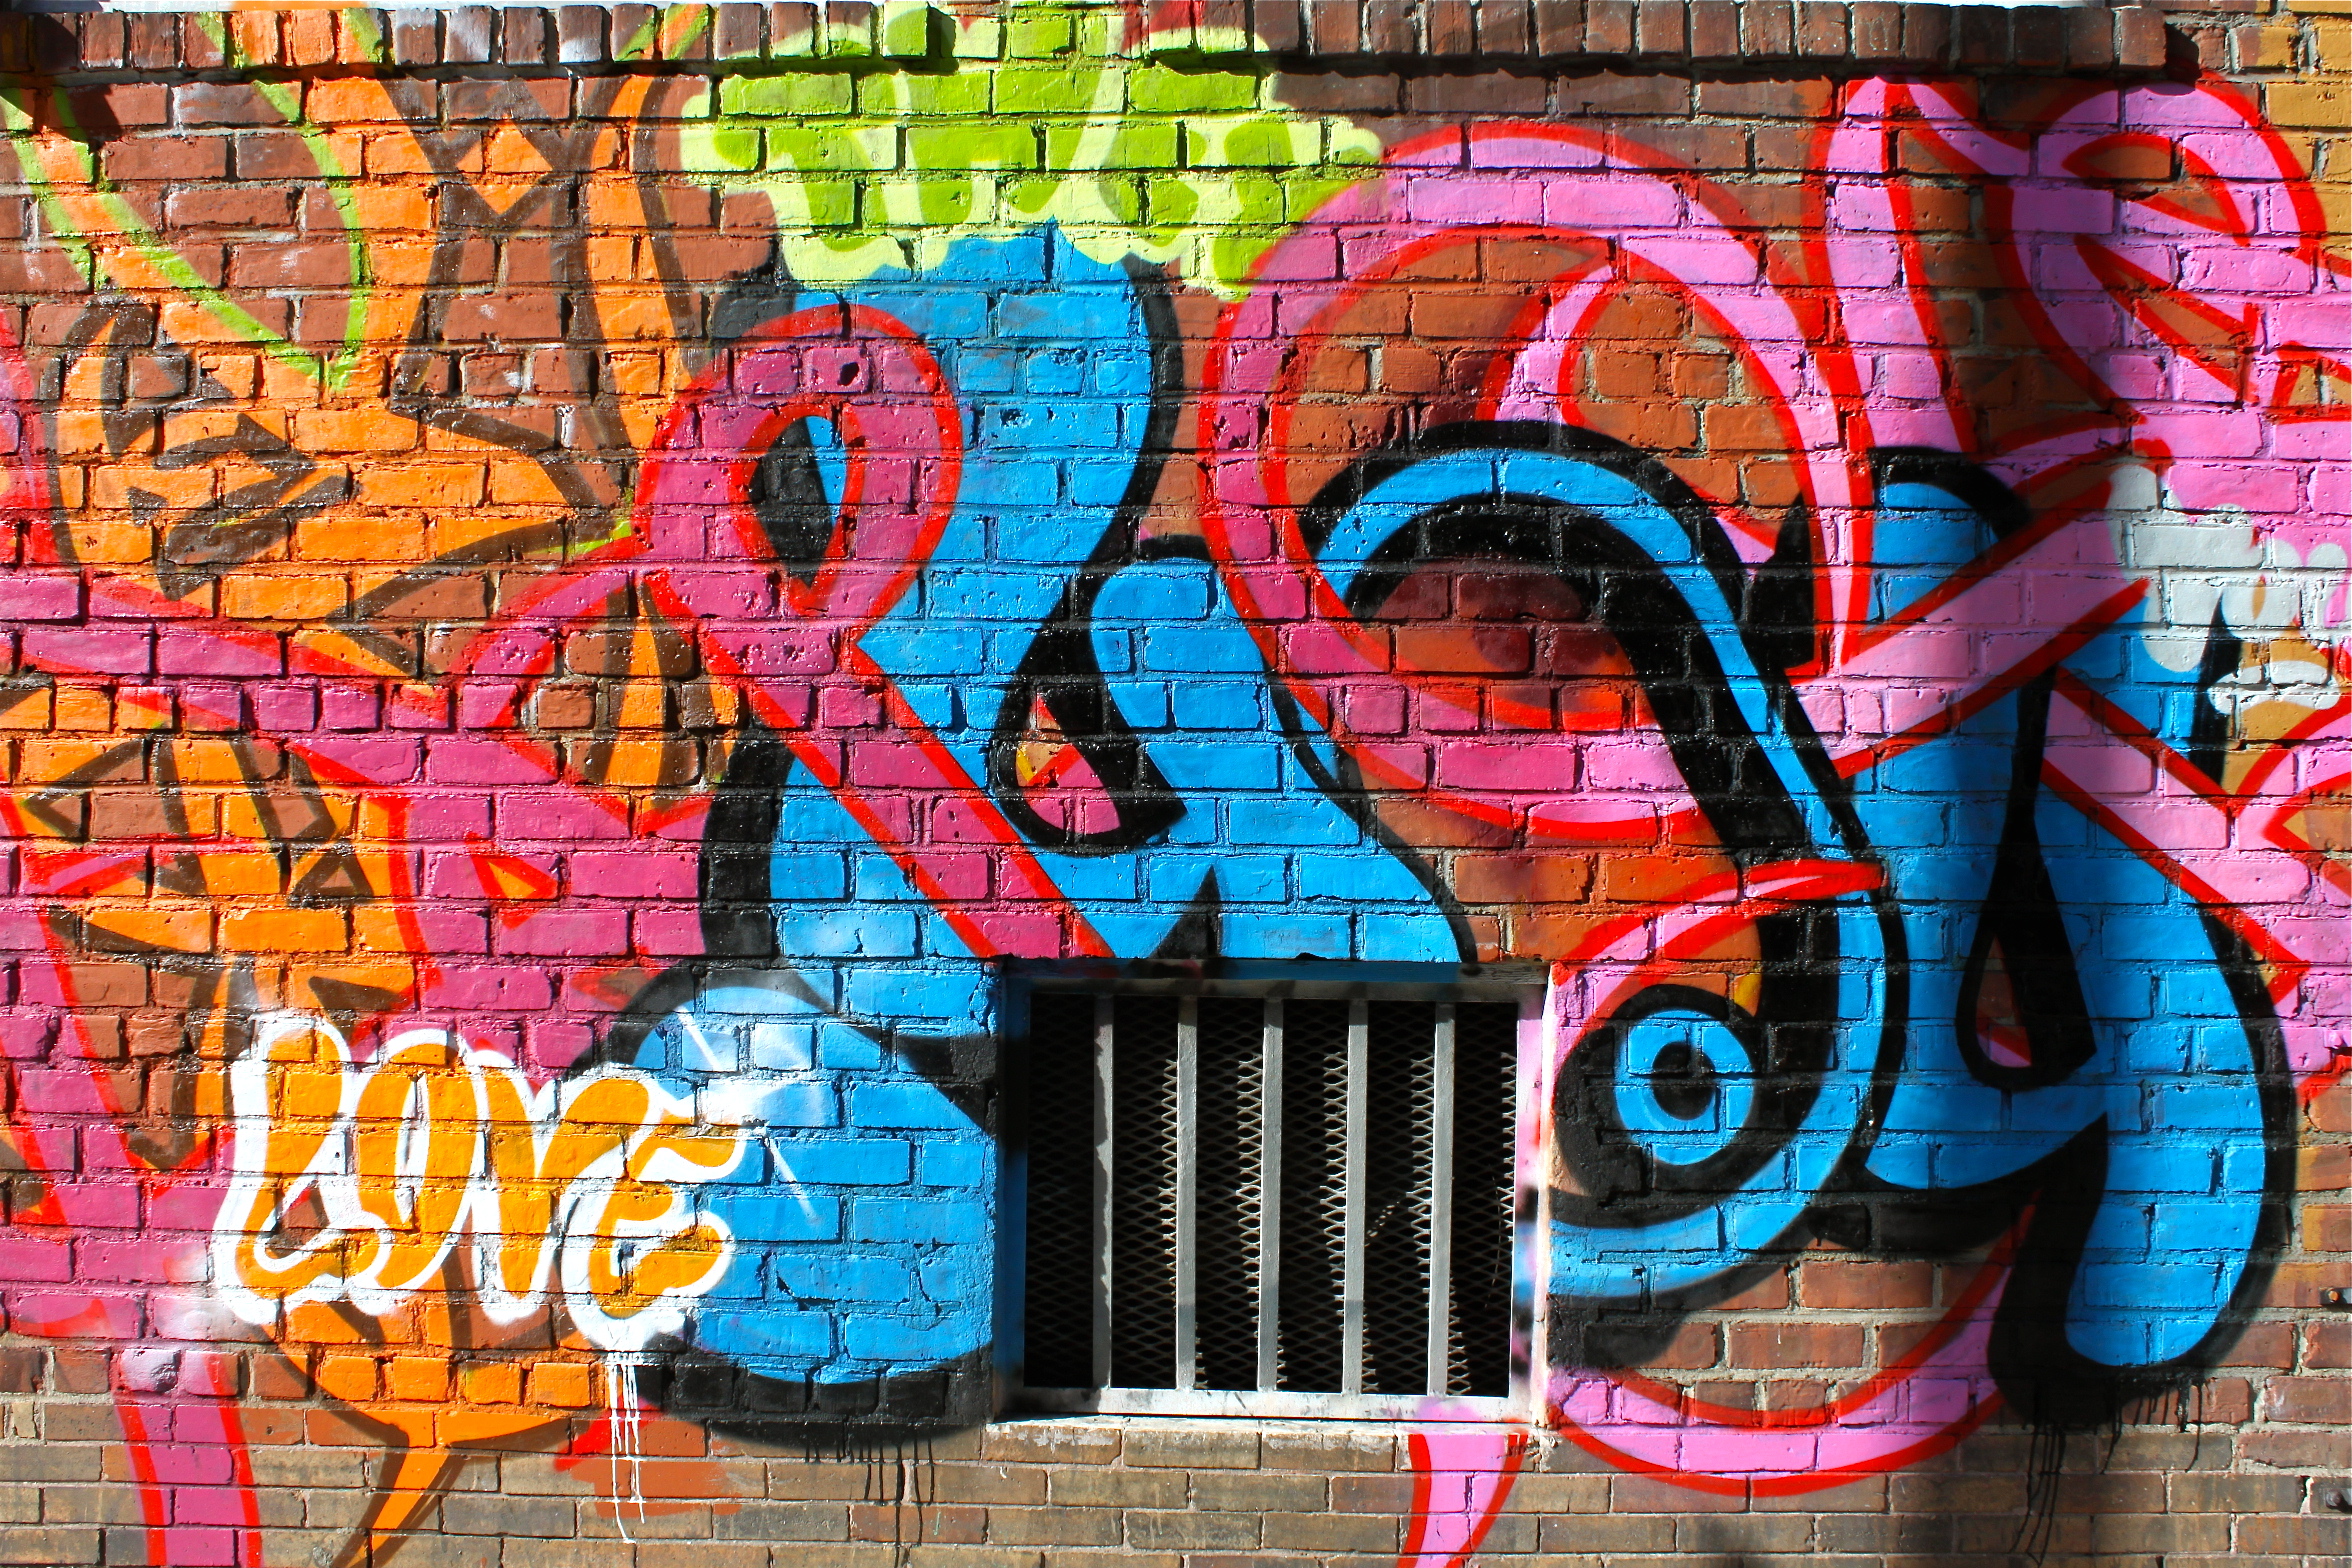 broome st nyc street art graffiti